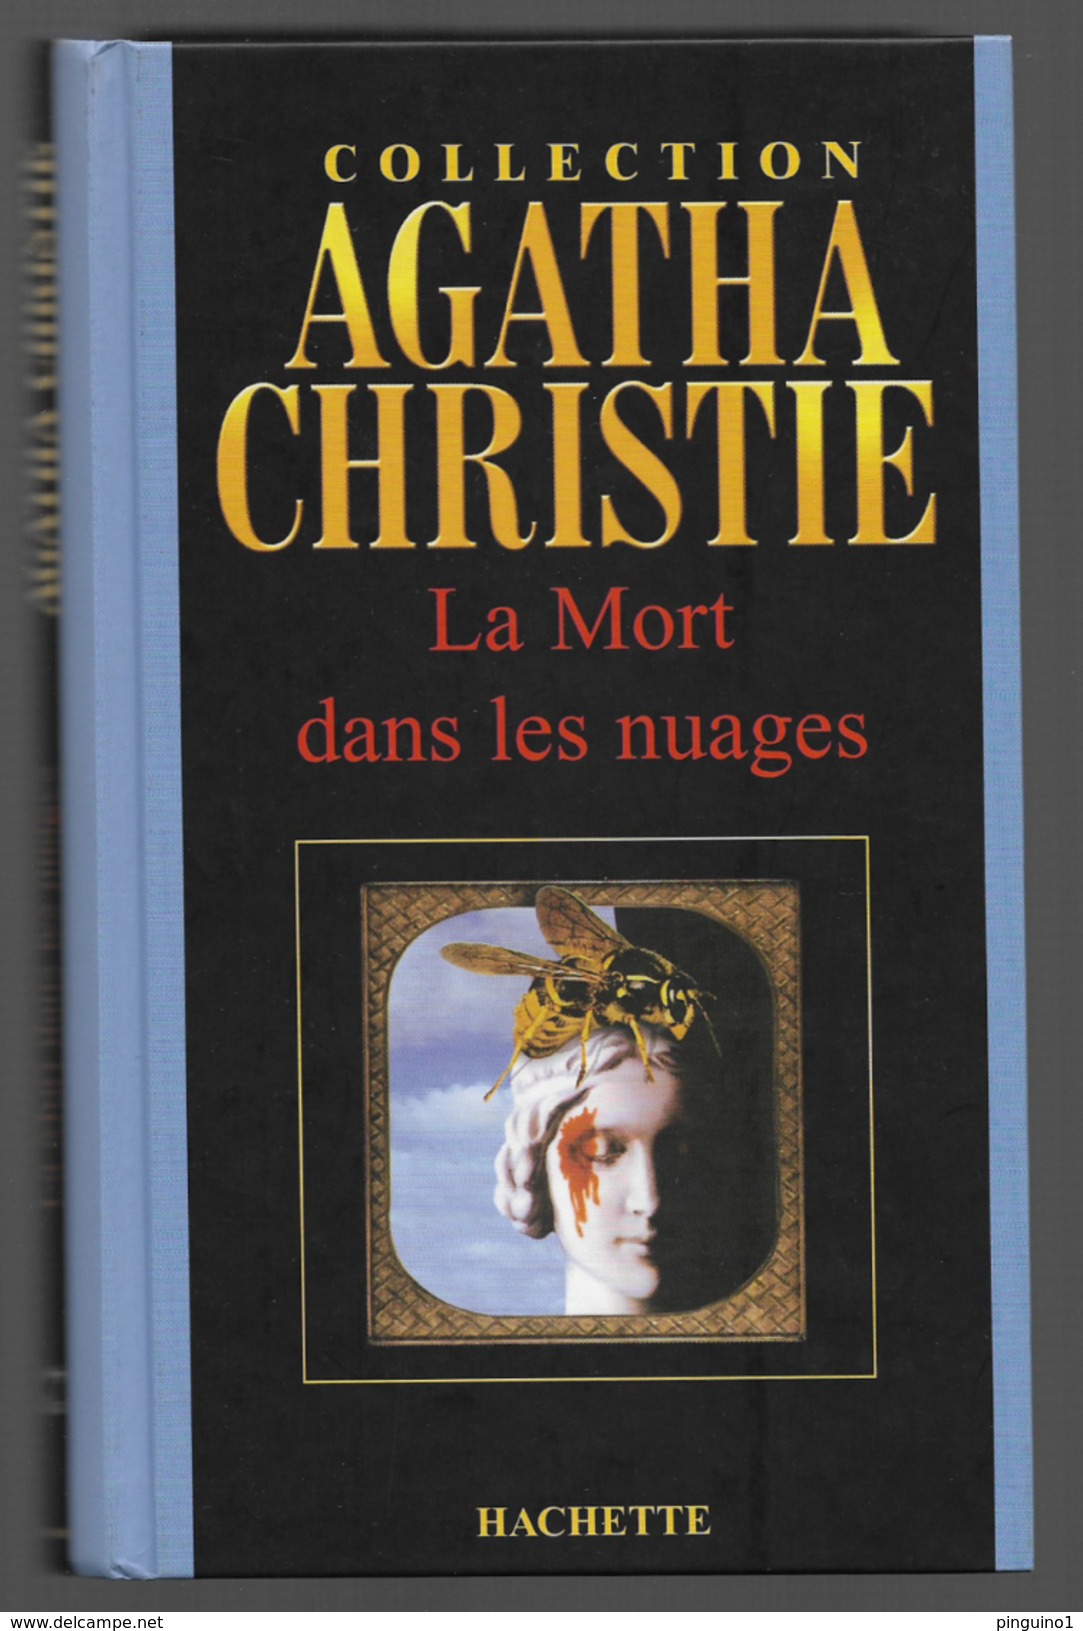 Agatha Christie Collection Hachette La Mort Dans Les Nuages - Agatha Christie